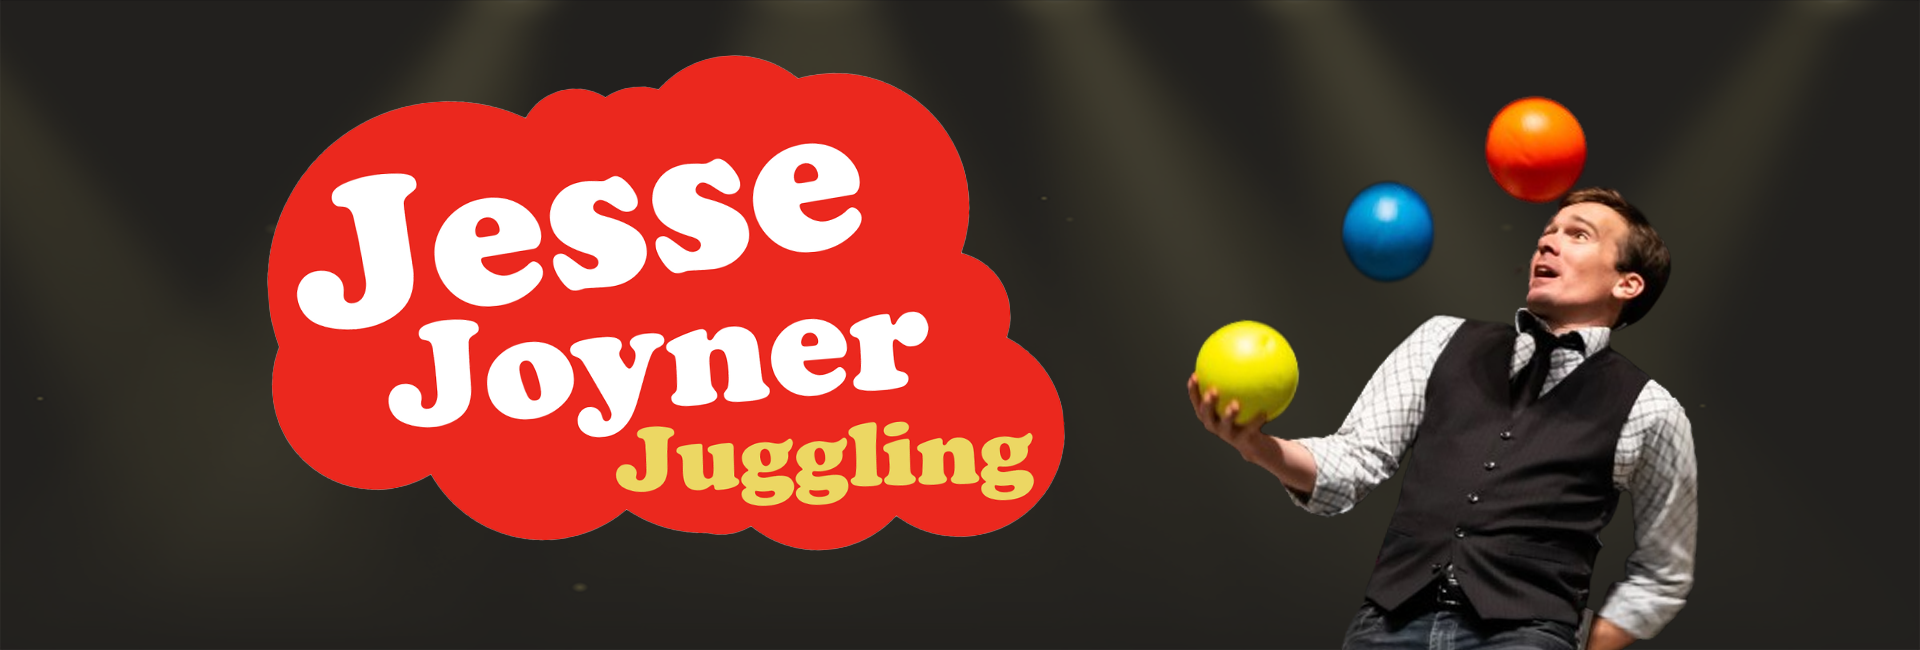 WEB HEADER-Jesse the Juggler